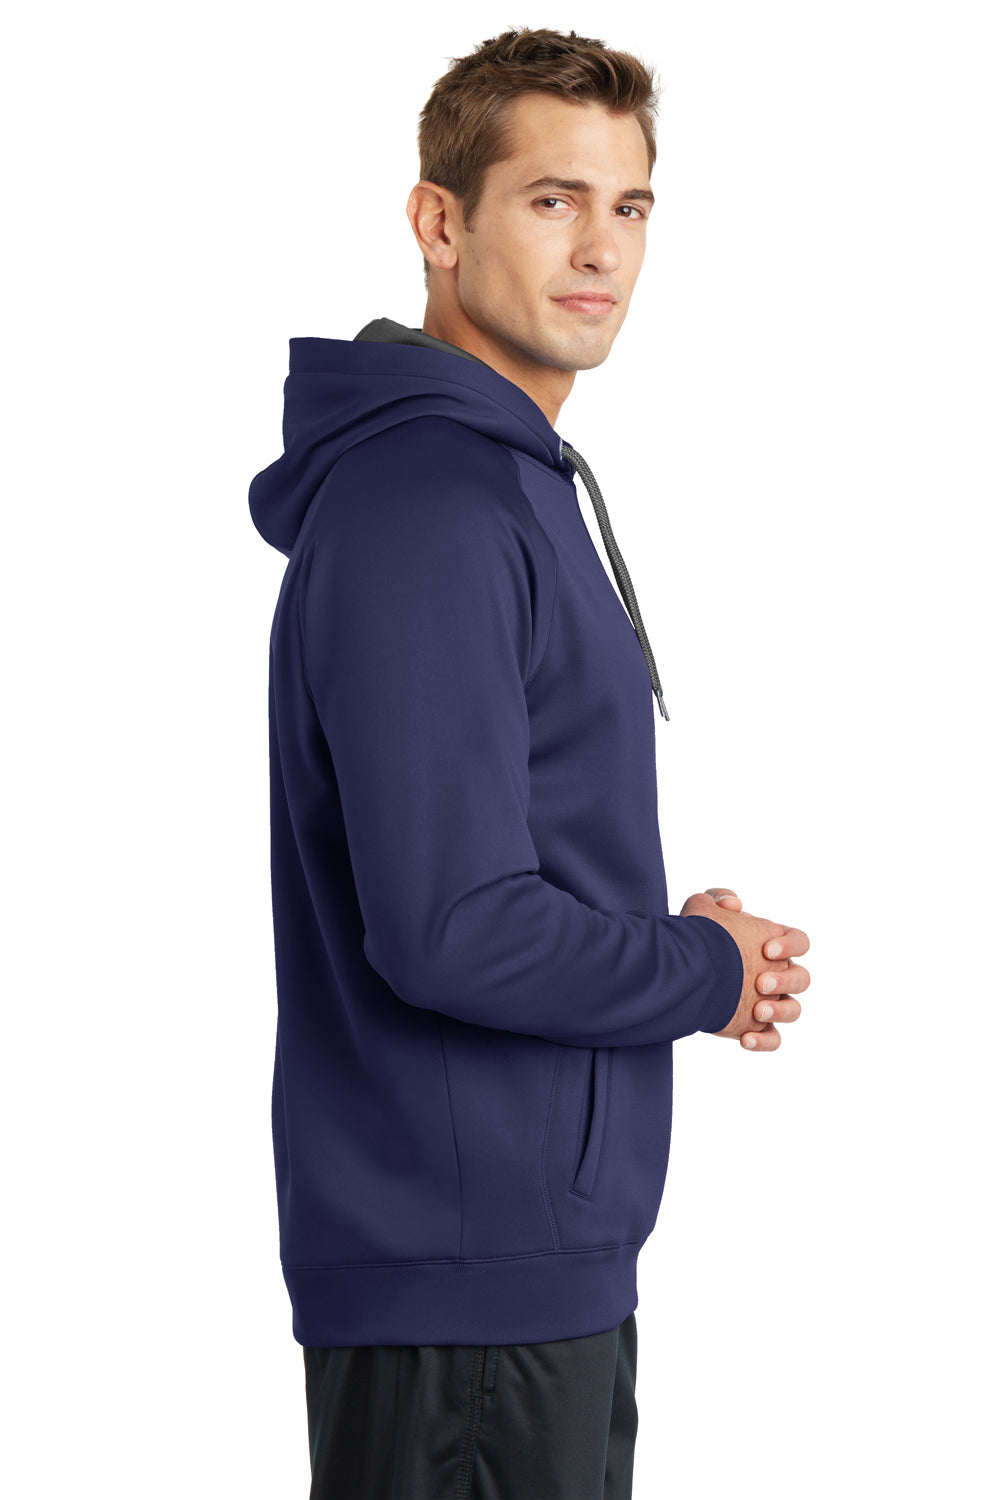 Sport-Tek ST250 Mens Tech Moisture Wicking Fleece Hooded Sweatshirt Hoodie Navy Blue Side